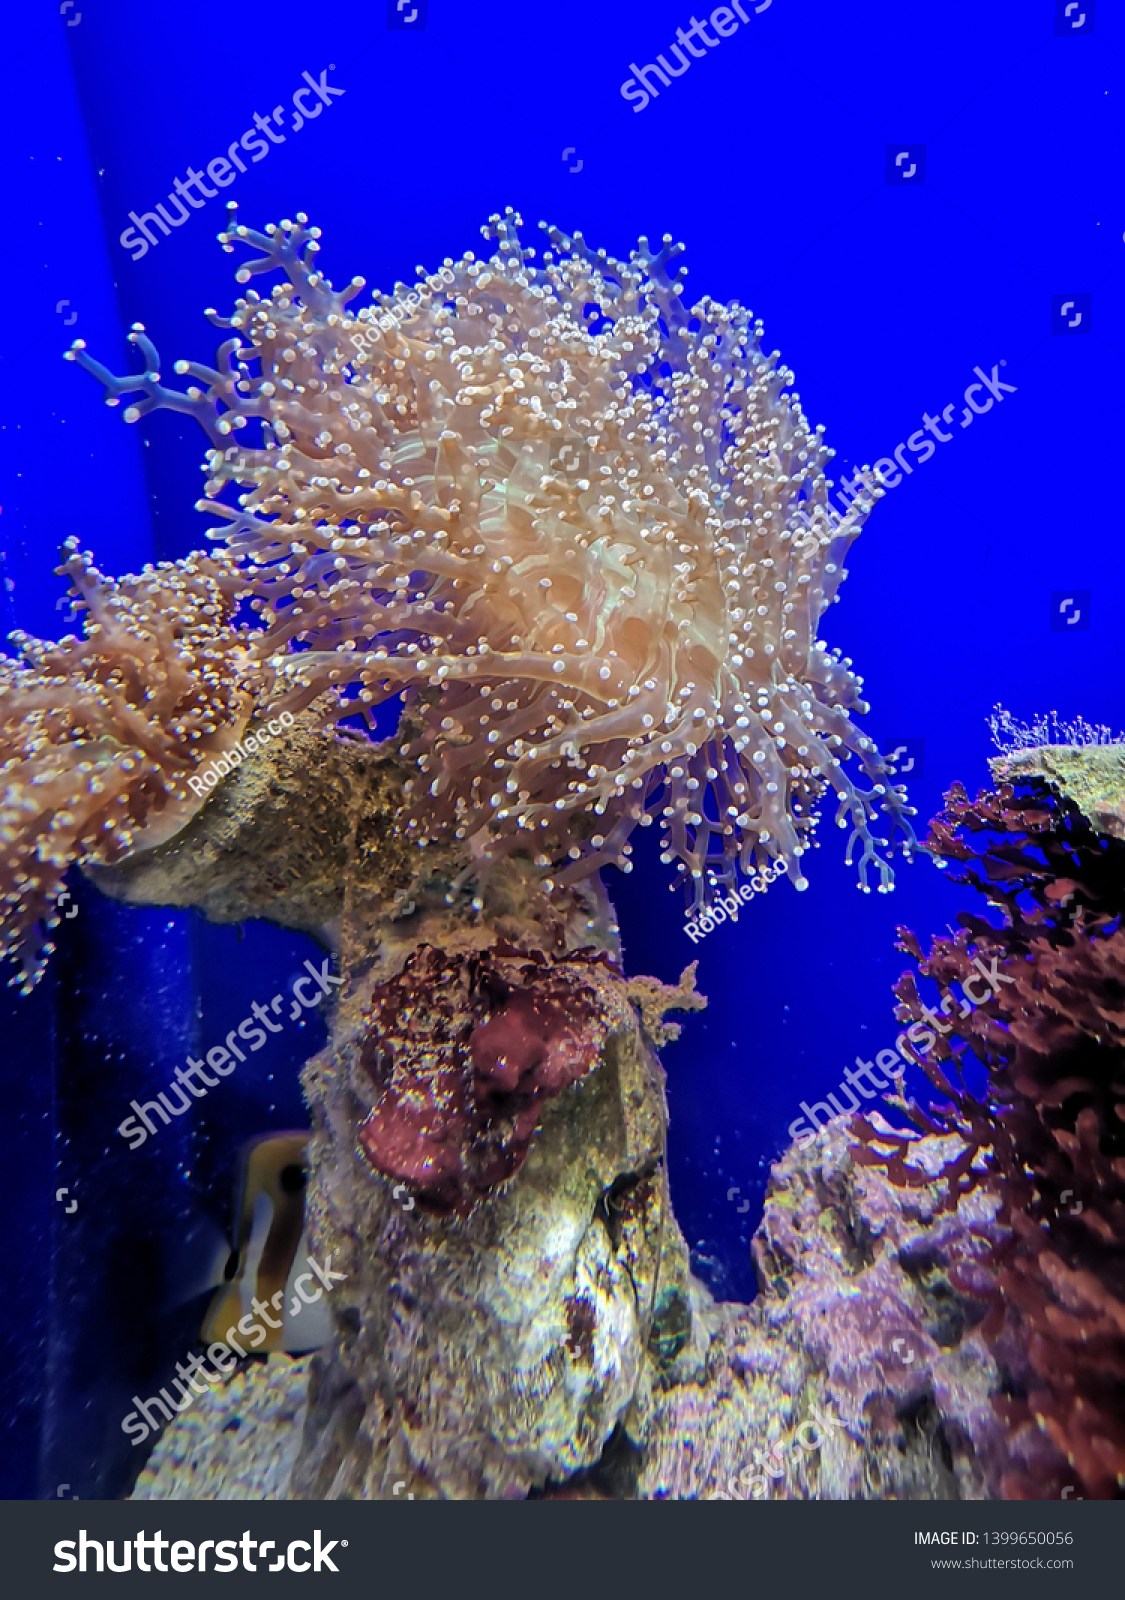 Aquarium and Marine organisms, marine life #1399650056